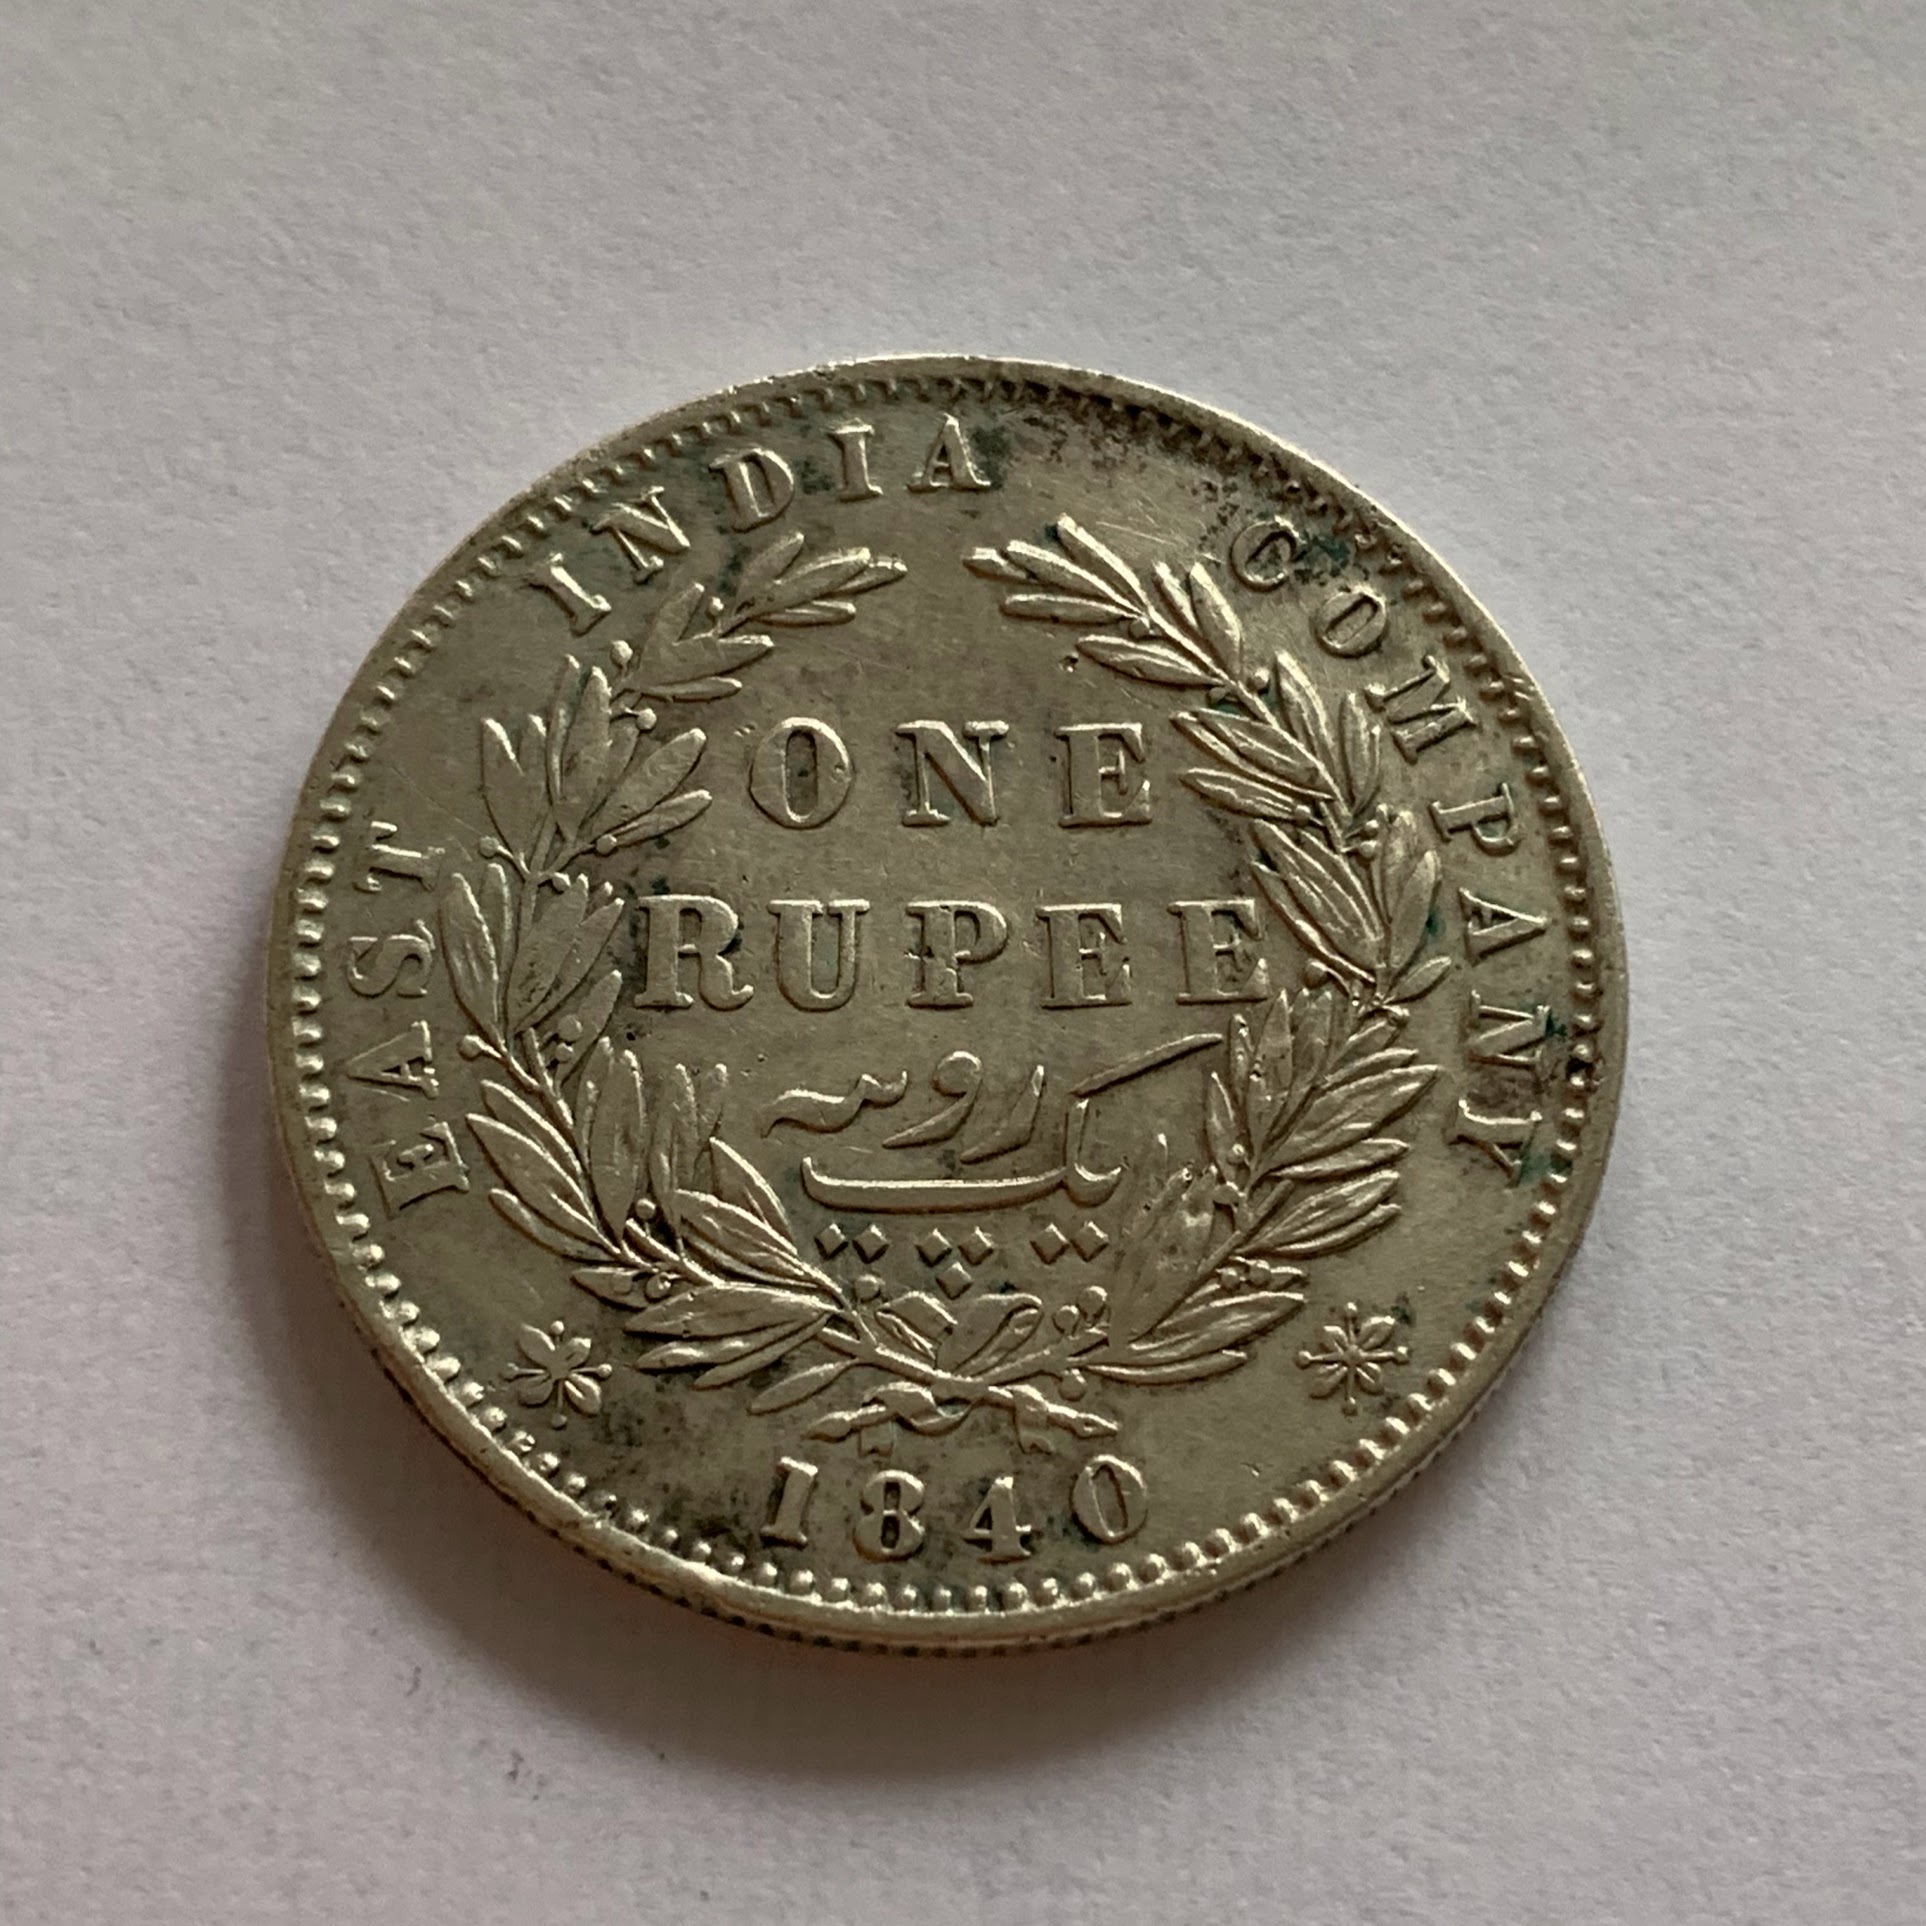 1 rupee 1840